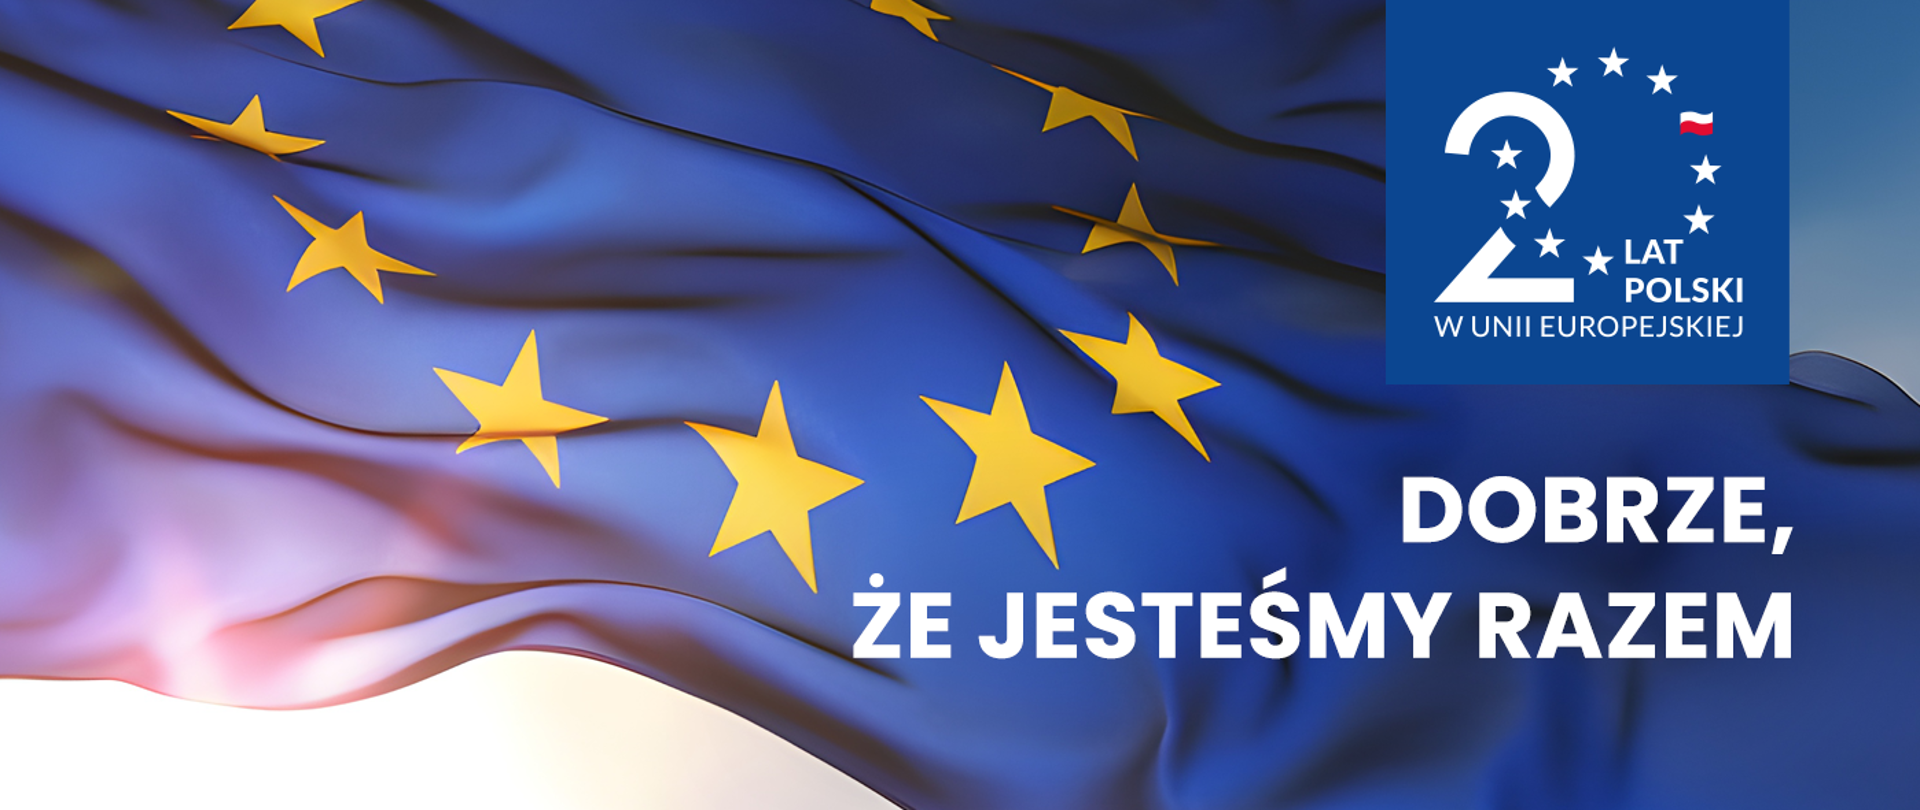 Flaga Unii Europejskiej powiewa na wietrze. Widoczne logo 20 lat Polski w Unii Europejskiej. Dobrze, że jesteśmy razem.